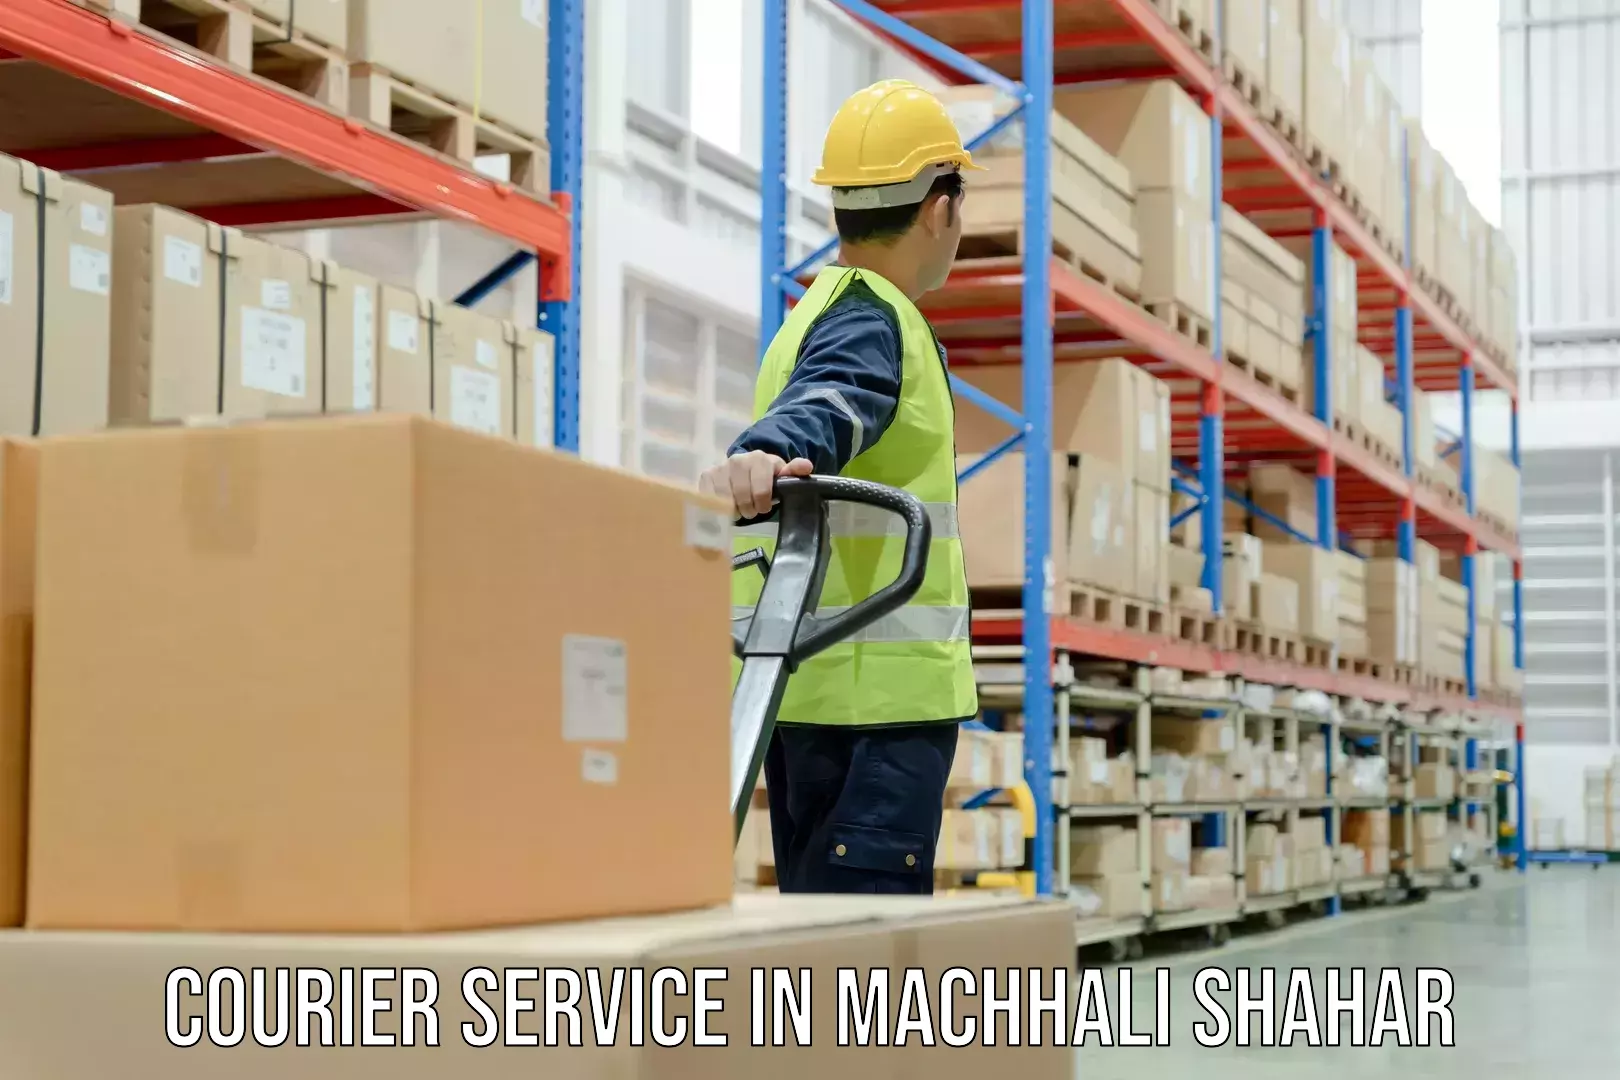 Premium courier services in Machhali Shahar